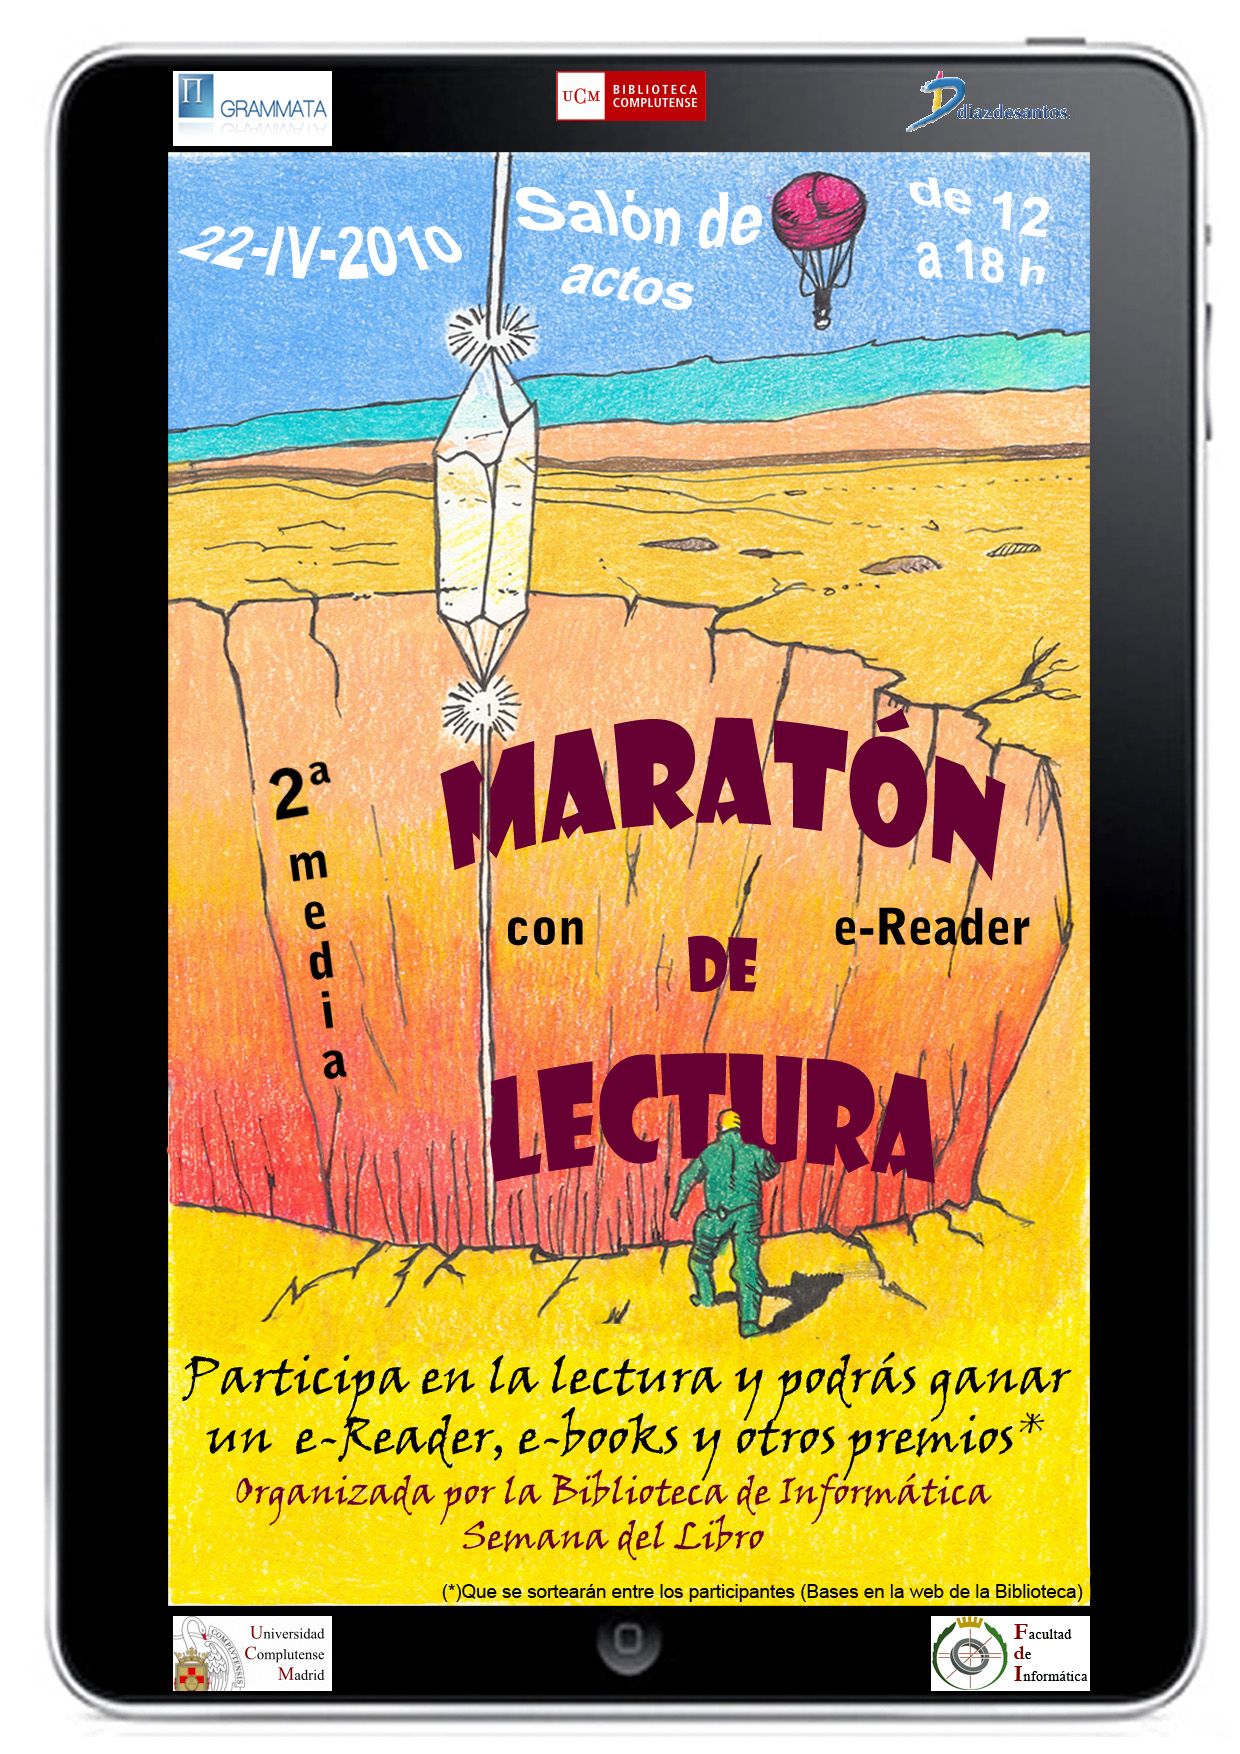 Cartel anunciador de la pasada 2ª Media Maratón de lectura con e-reader